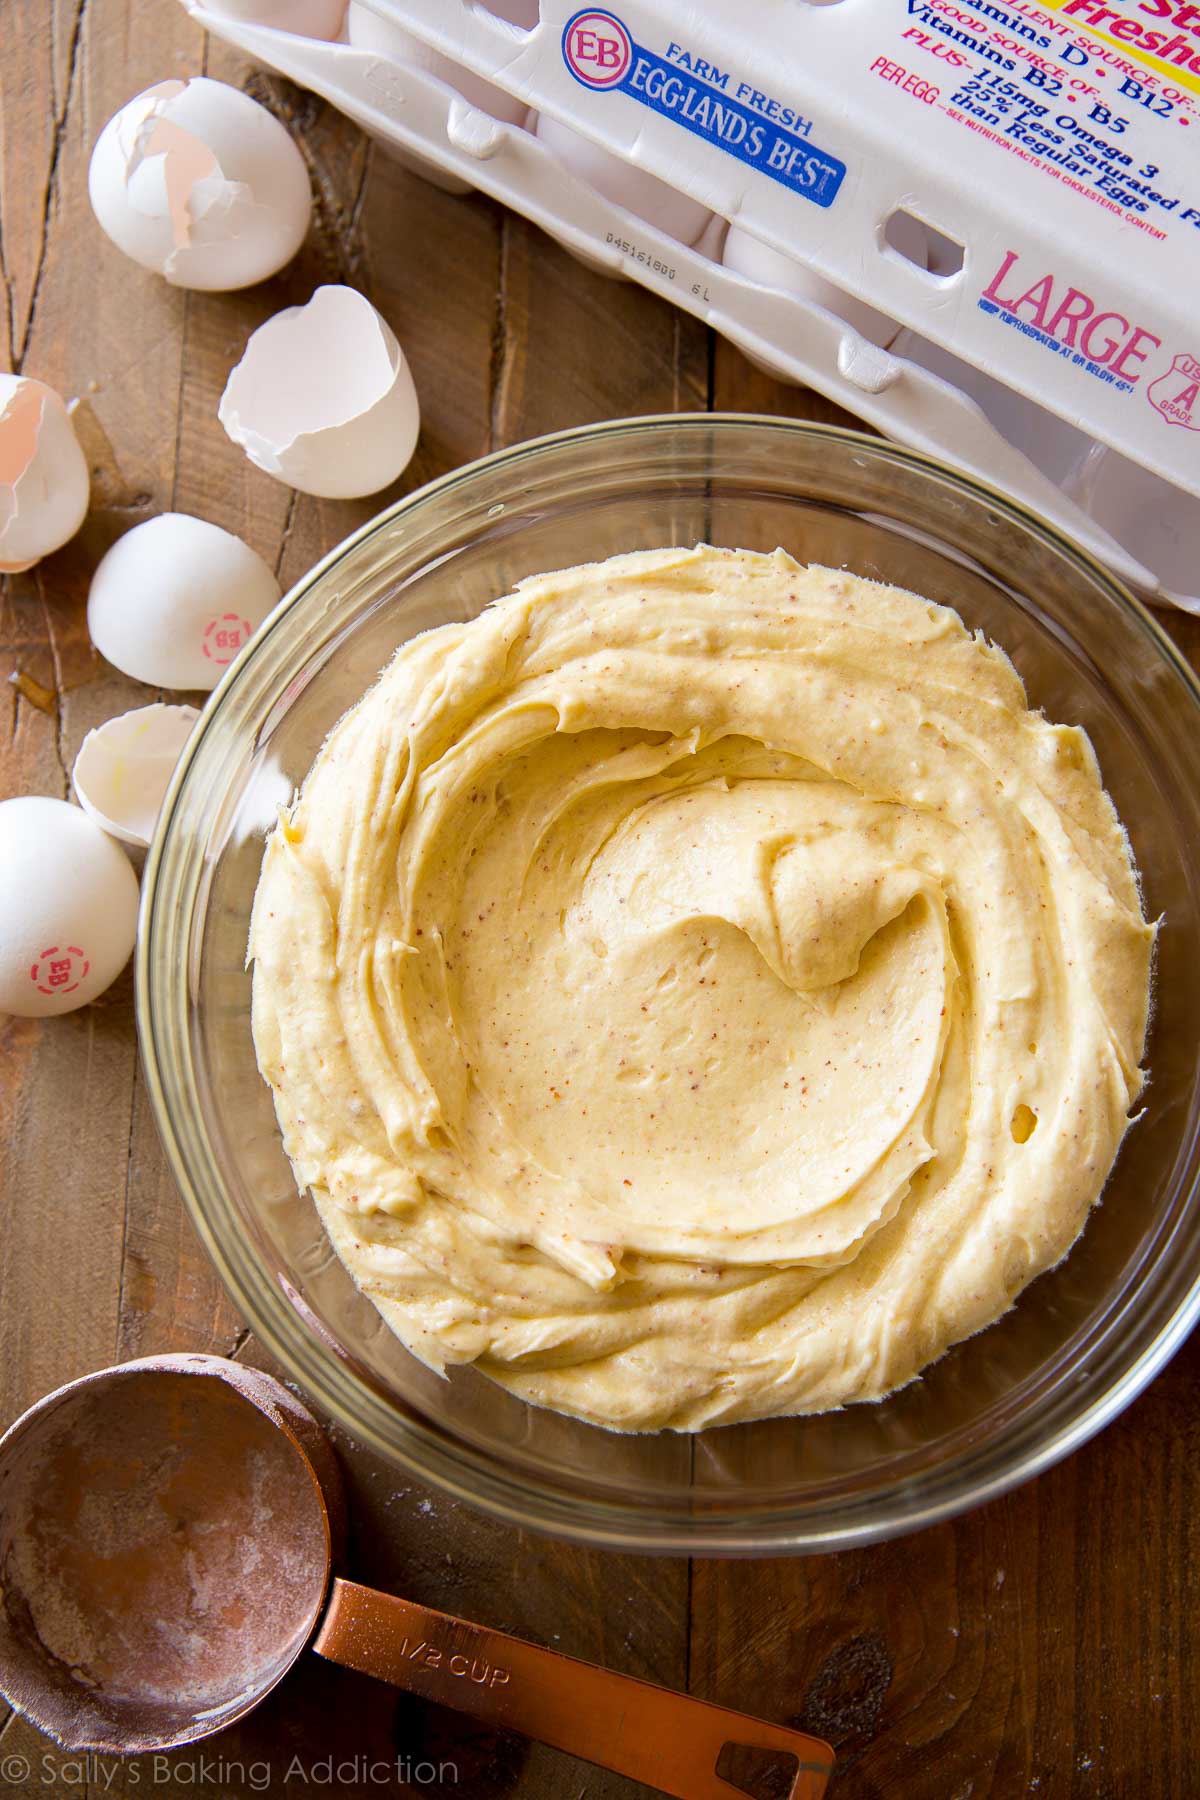 Comment faire un gâteau au beurre brun sur sallysbakingaddiction.com